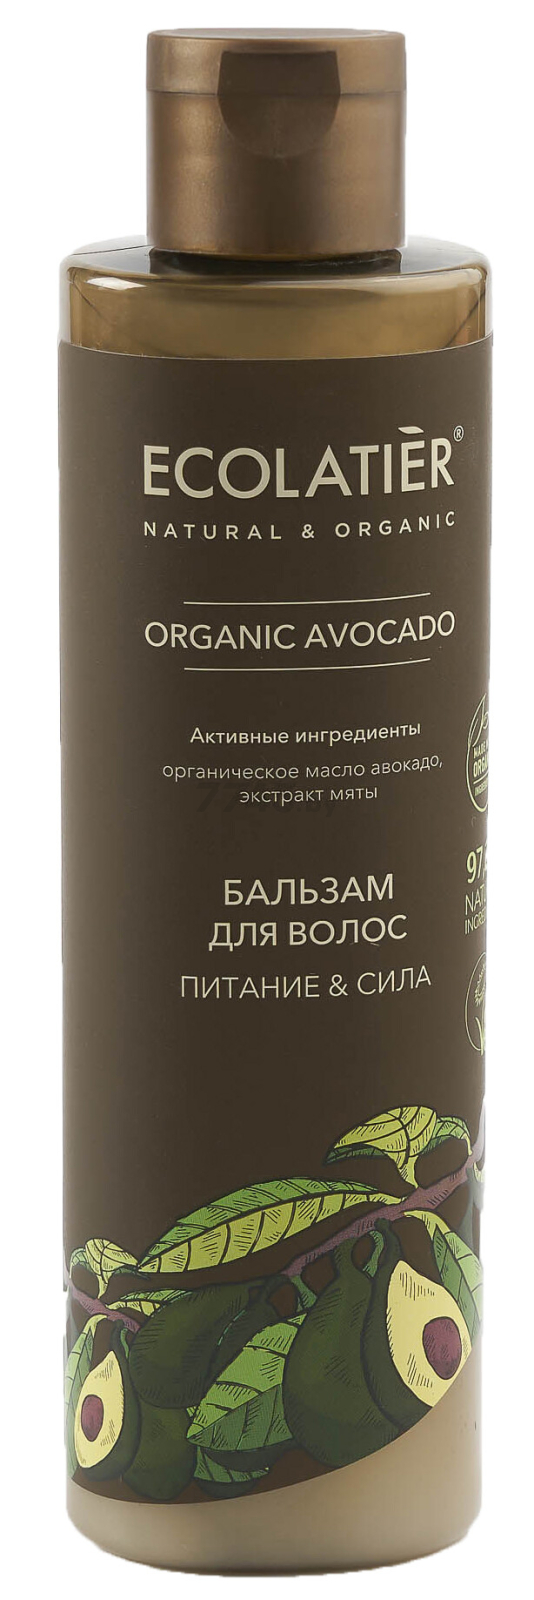 Бальзам ECOLATIER Organic Avocado Питание и Сила 250 мл (4620046172705)